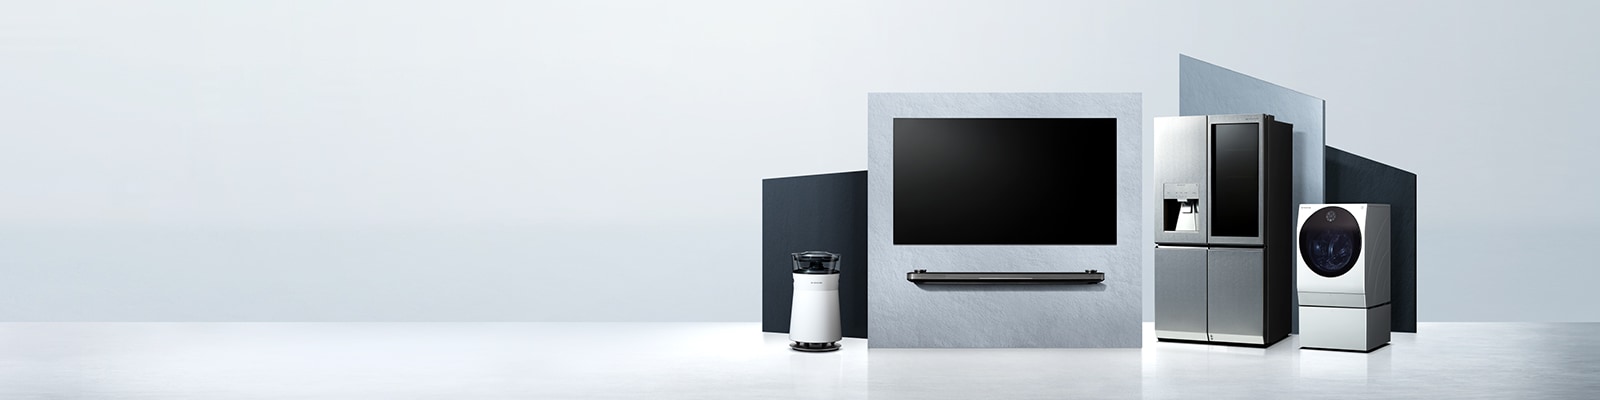 تم وضع LG SIGNATURE OLED TV W والثلاجة والغسالة على المساحة الافتراضية.											